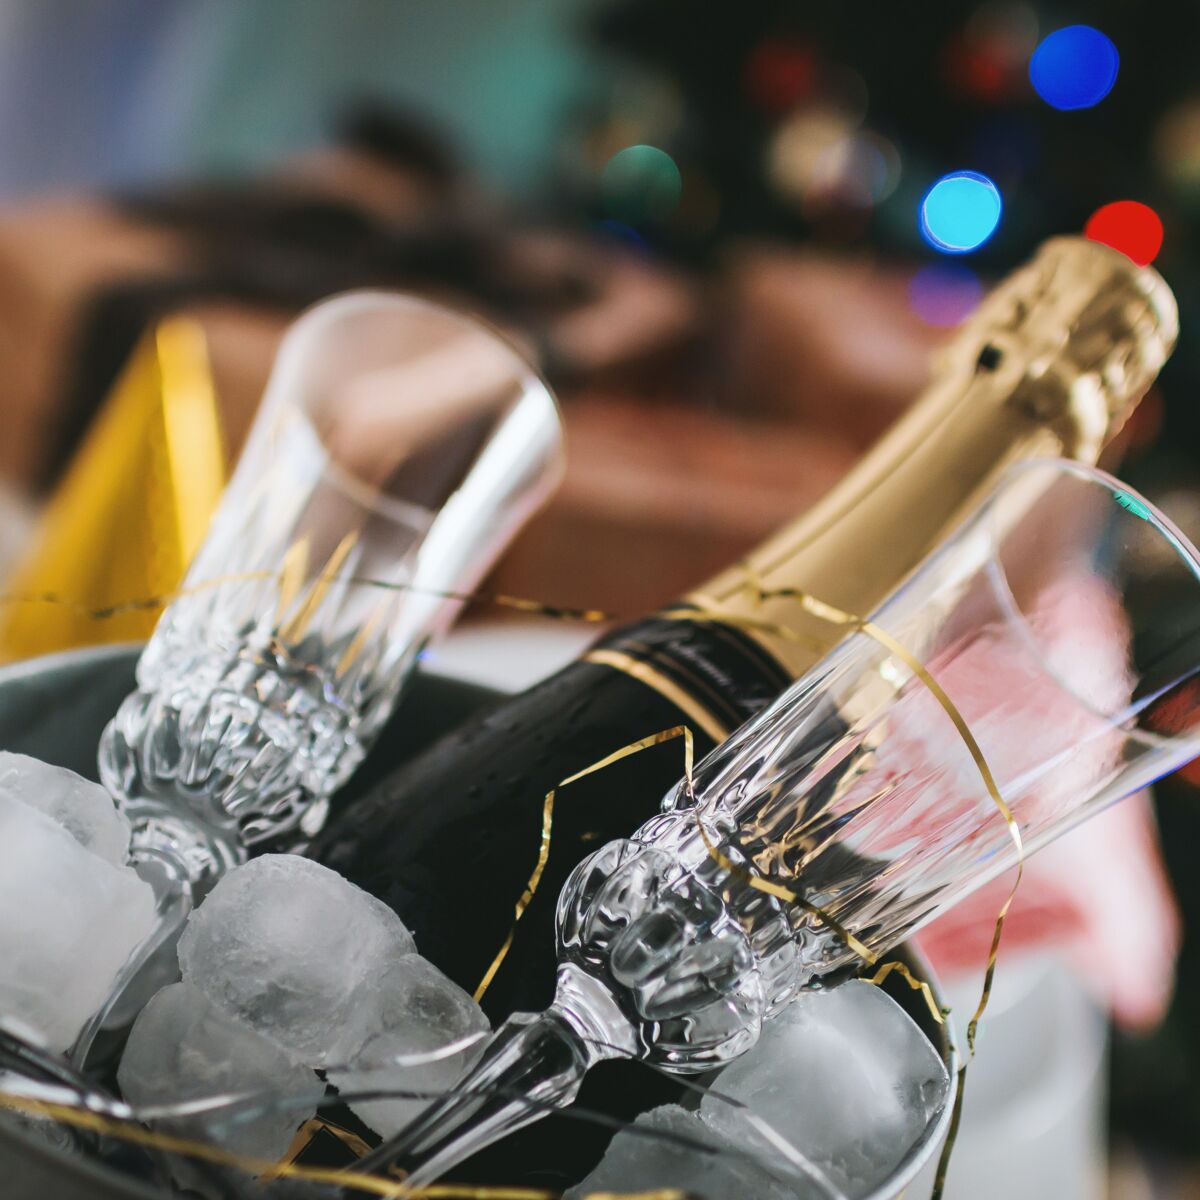 Le champagne le moins cher pour les fêtes selon 60 millions de  consommateurs 